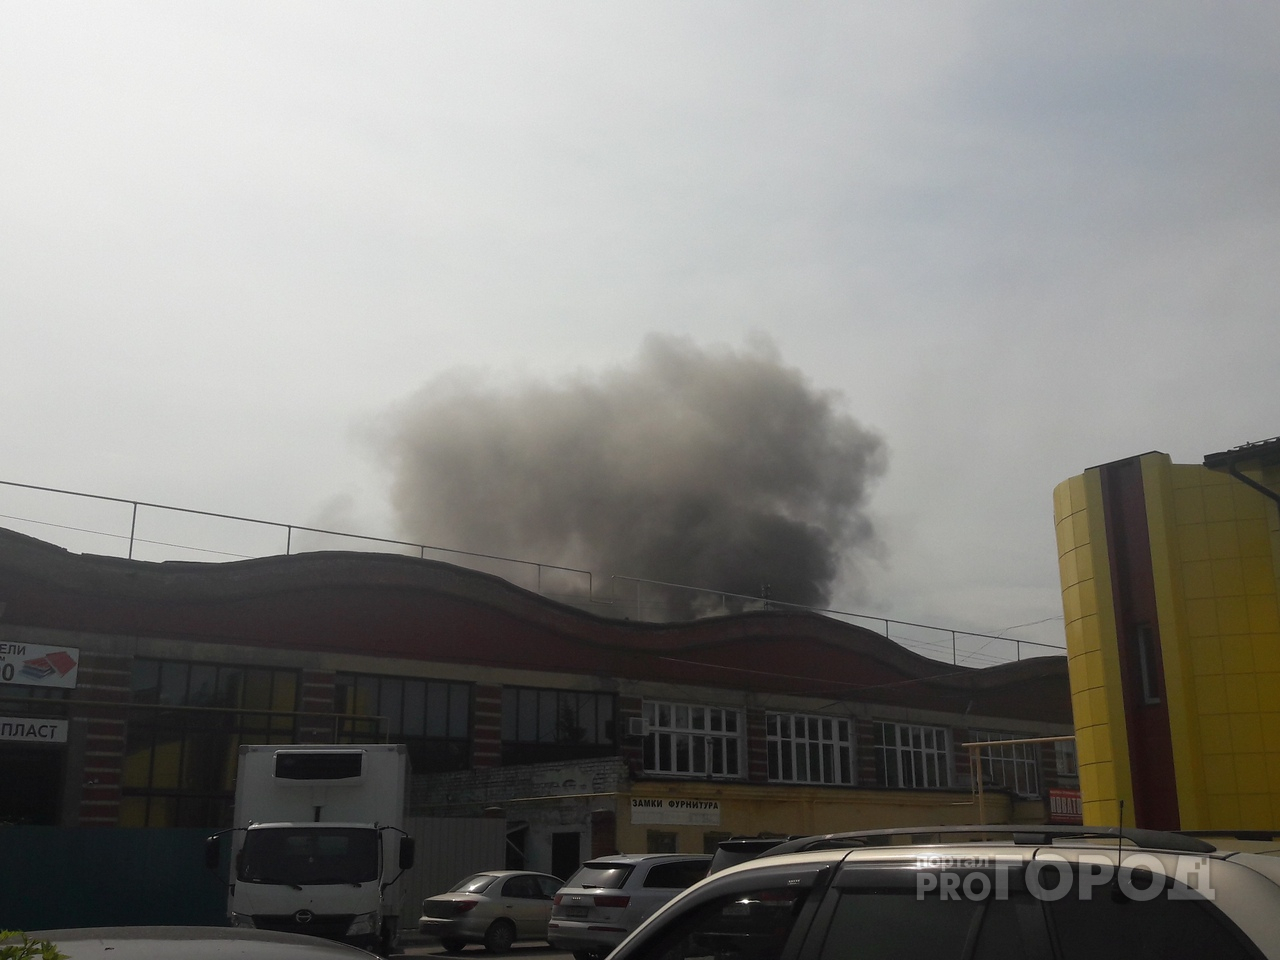 С возгоранием на заводе в Йошкар-Оле пожарные боролись несколько часов